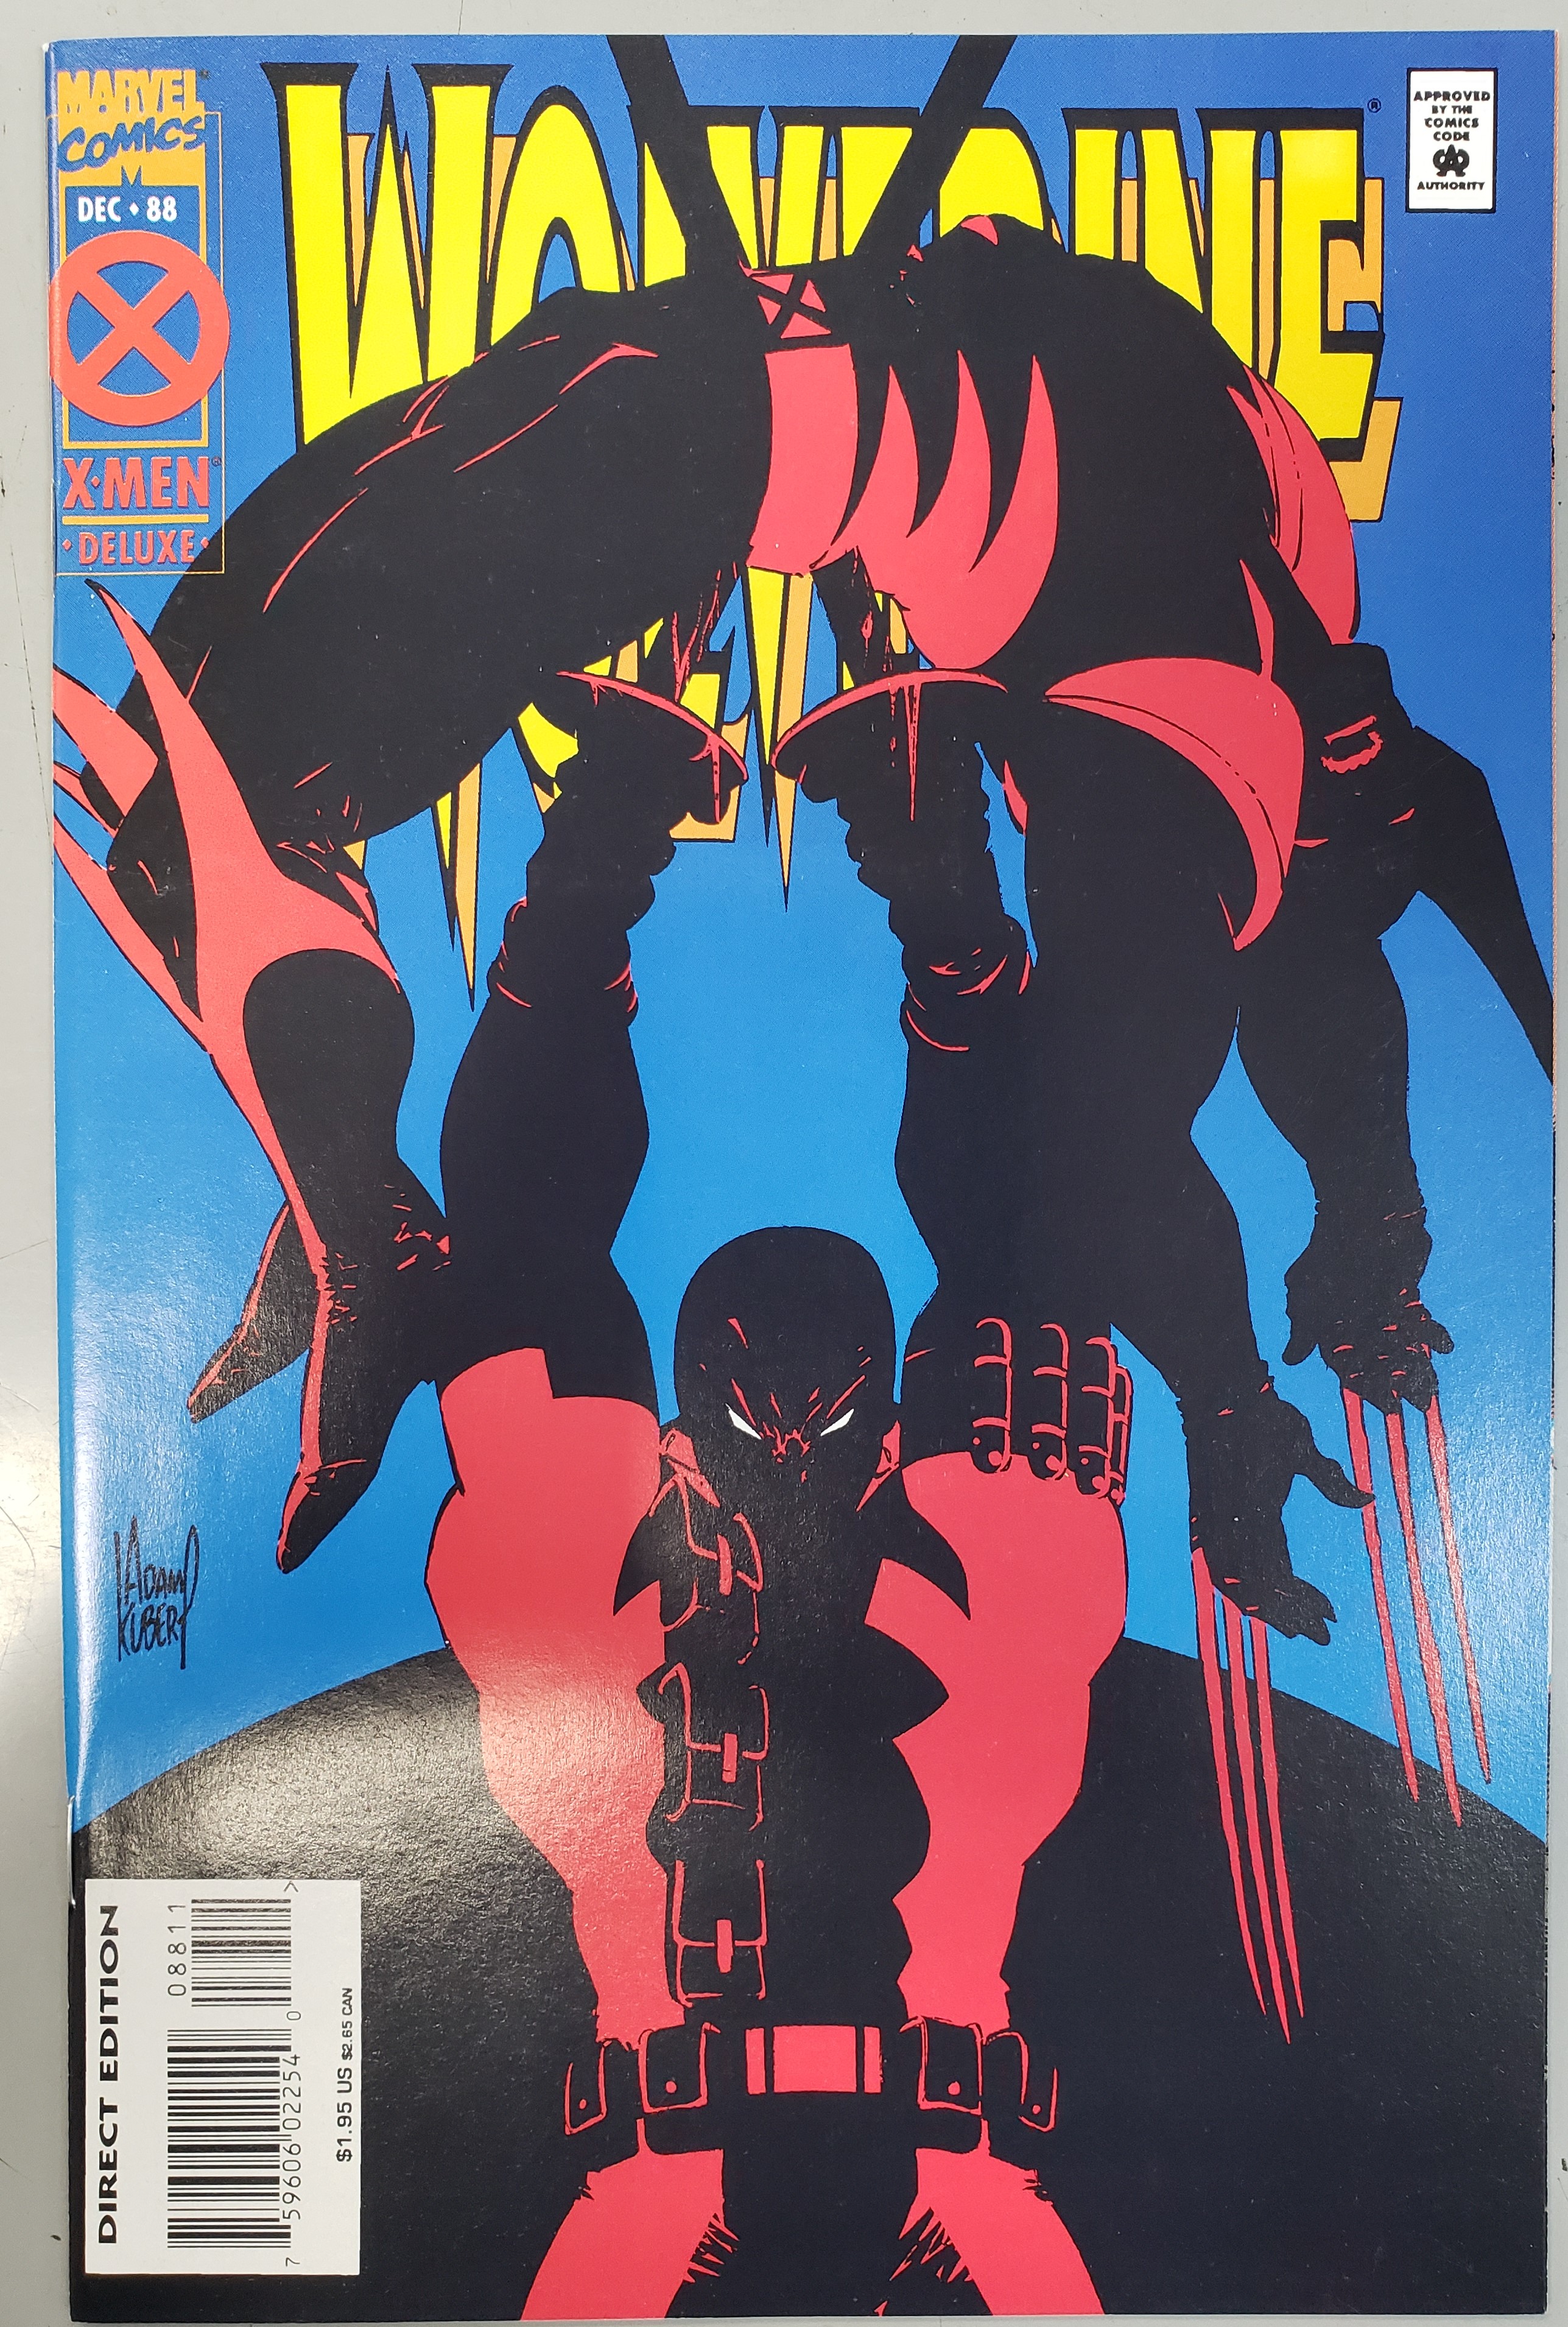 Wolverine #88 (1988)